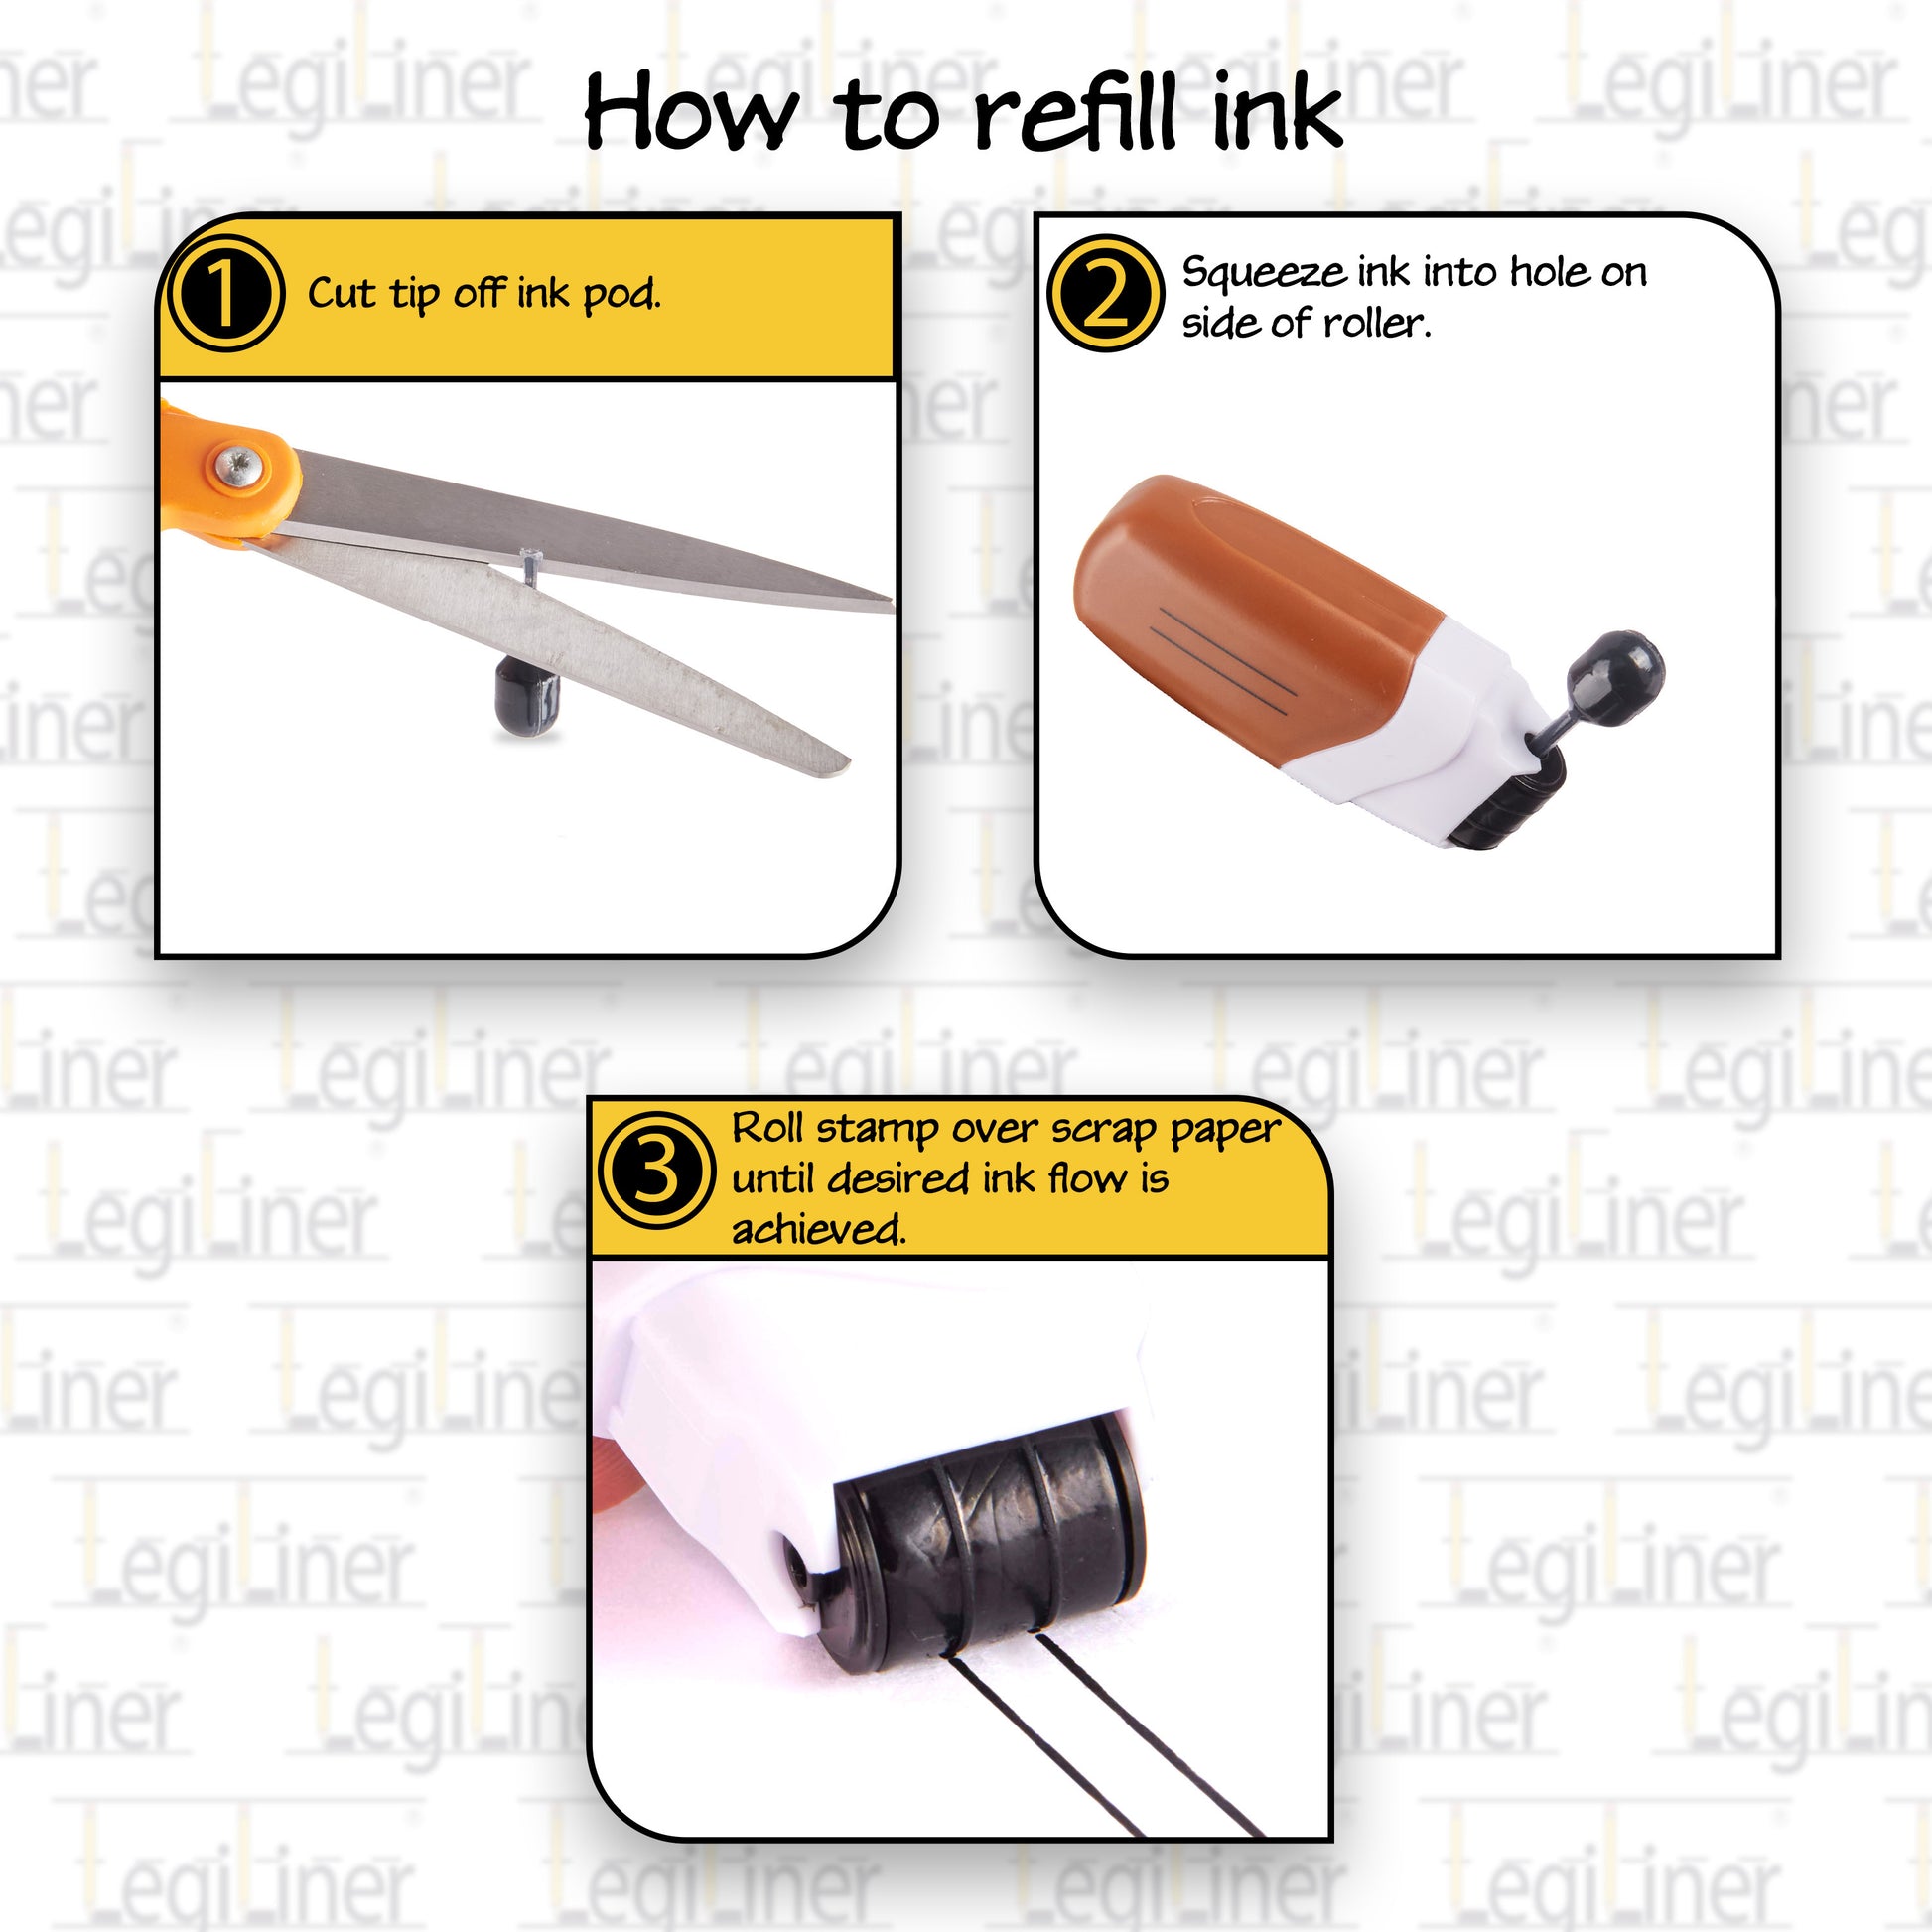 LegiLiner 3/4 inch Boxes Rolling Ink Stamp